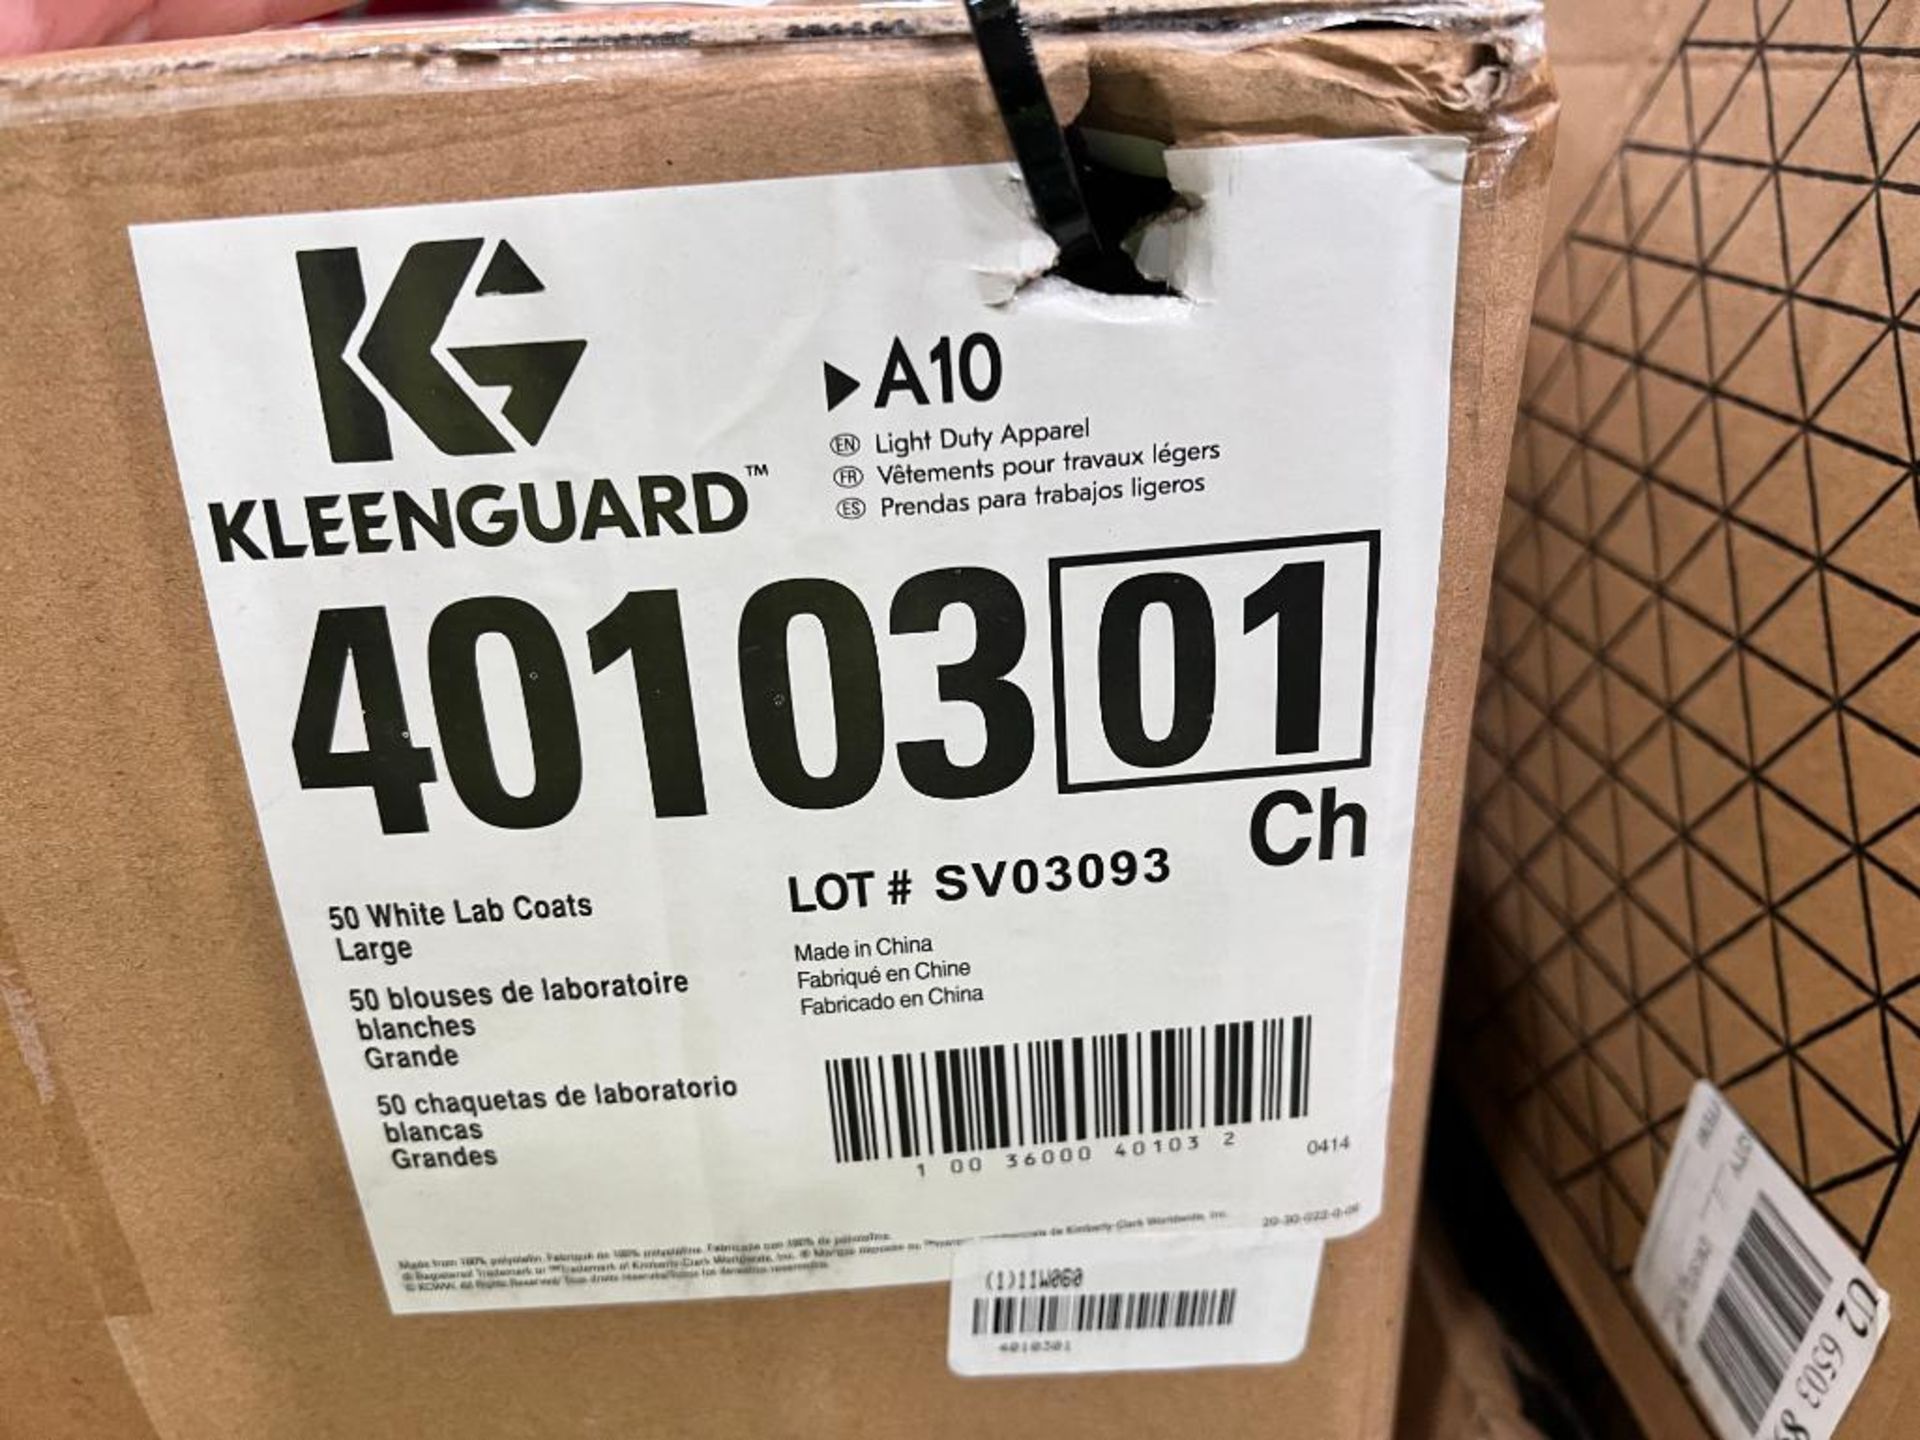 boxes of Kleenguard white lab coats - Image 4 of 5